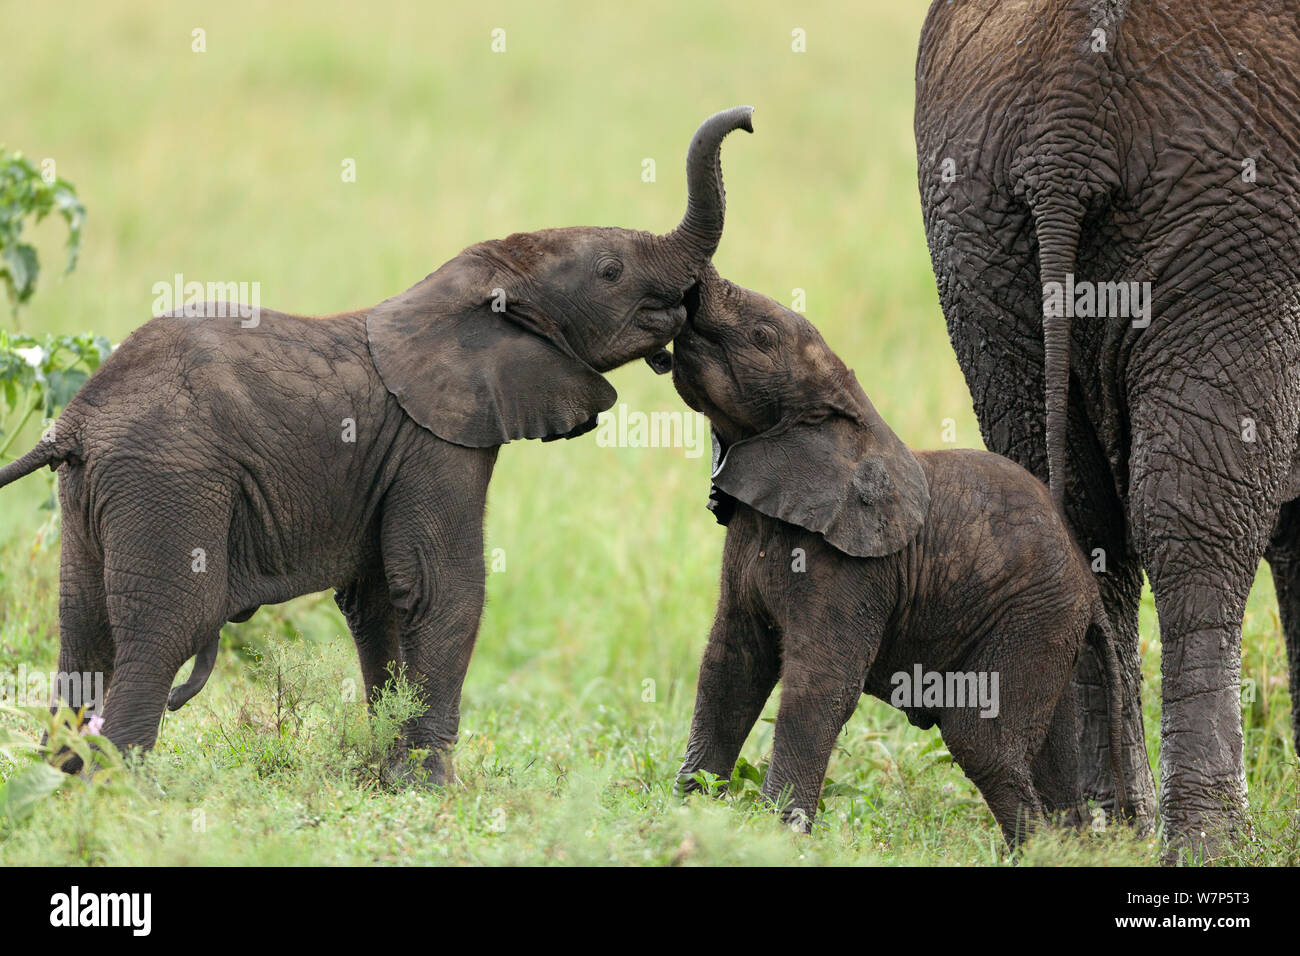 L'éléphant africain (Loxodonta africana) les bébés à jouer. Masai-Mara Game Reserve, Kenya. Banque D'Images